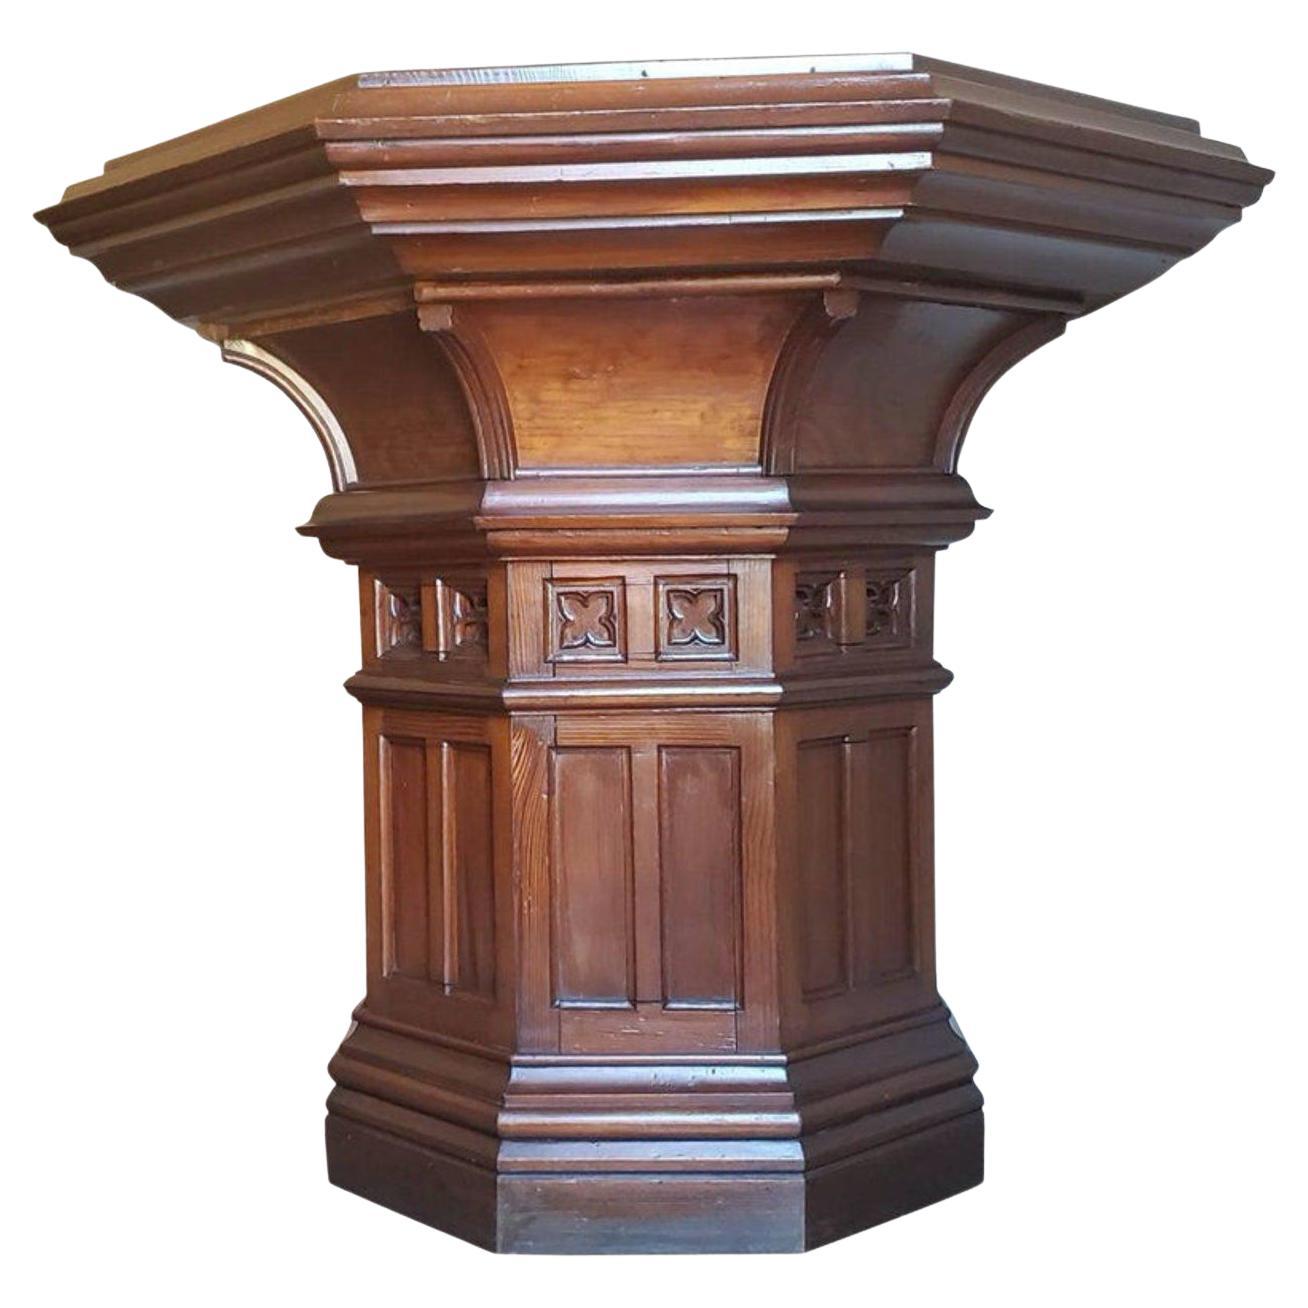 19th Century Victorian Gothic Revival Ecclesiastical Altar Table Attrib Pugin